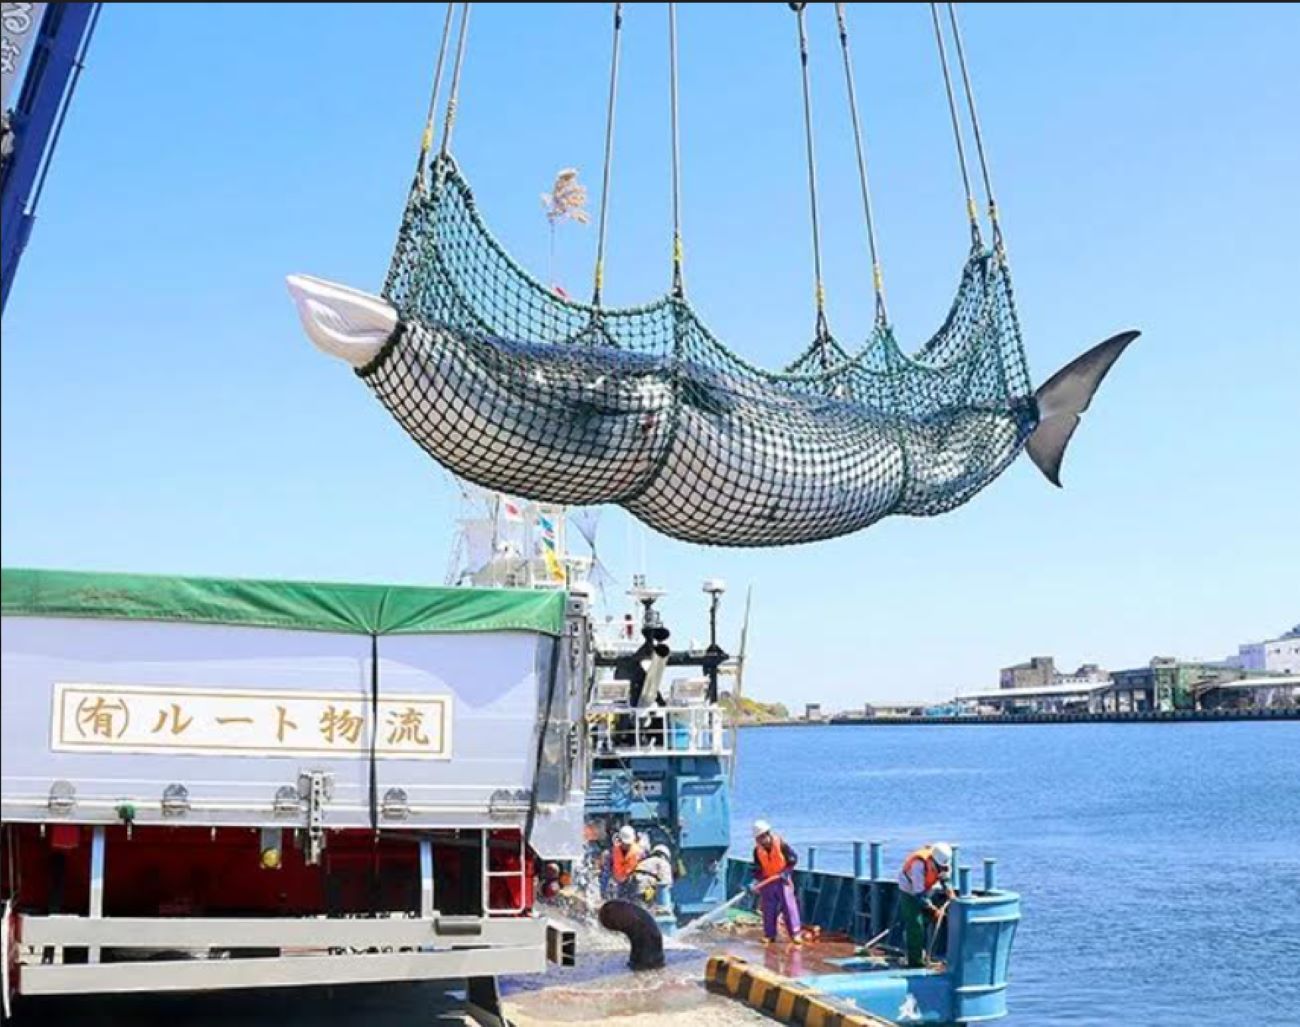 ဂျပန်တွင် ဆူးတောင့်ပါ ဝေလငါးများကို စတင်ဖမ်းဆီးခွင့် ပြုမည်